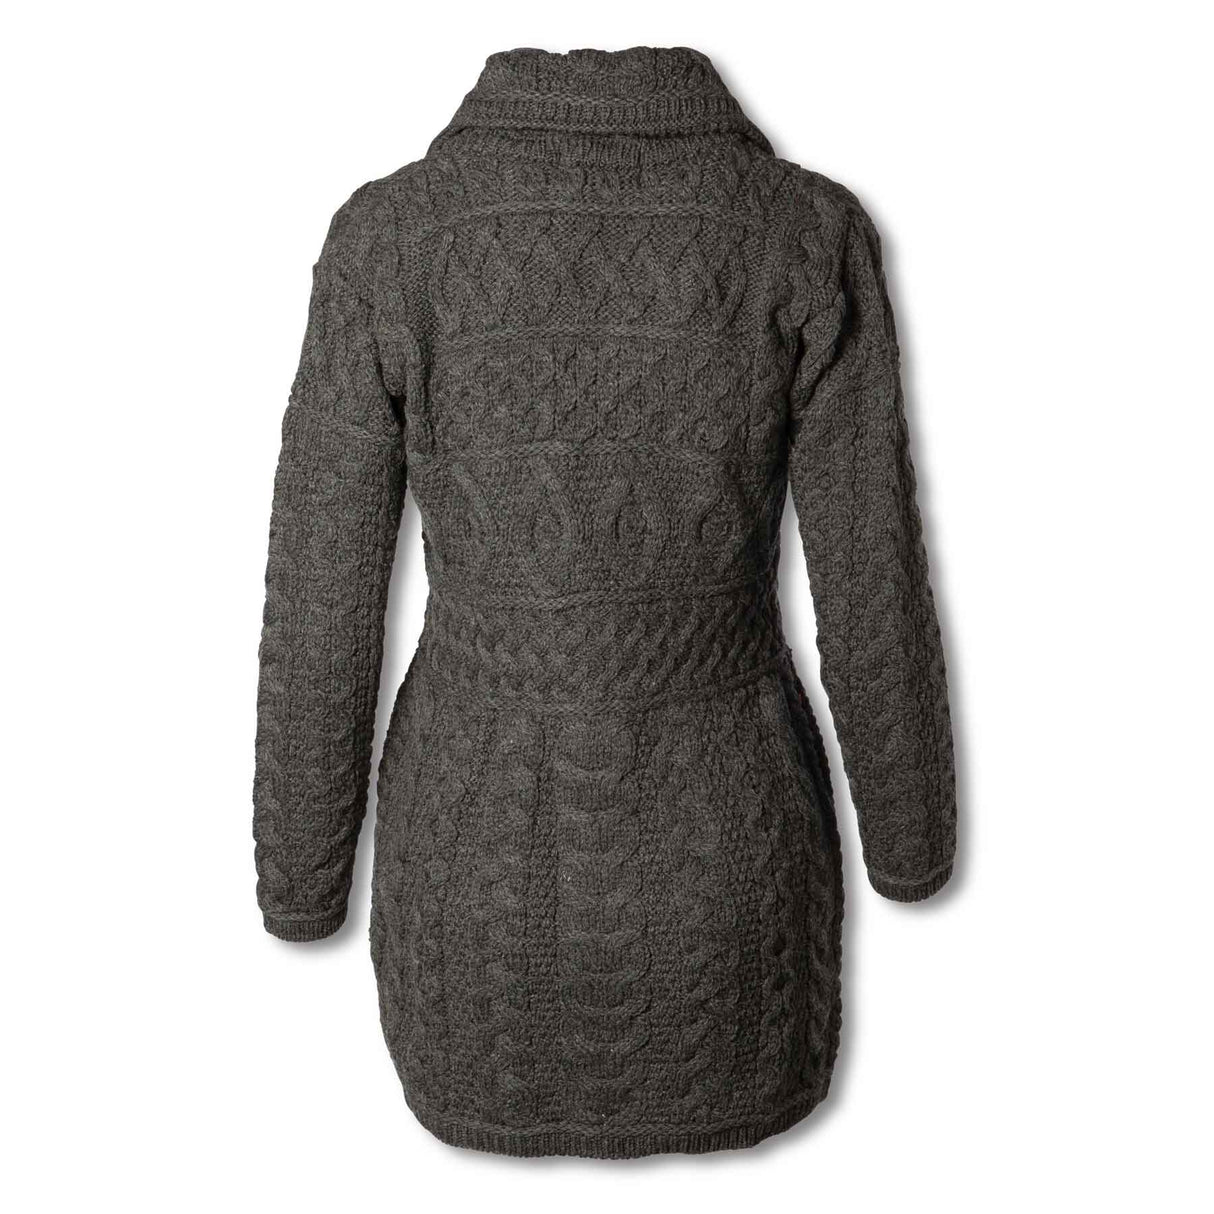 Aran Wool Sweater Jacket with Oversized Collar - Charcoal - 100% Merino Wool - Creative Irish Gifts